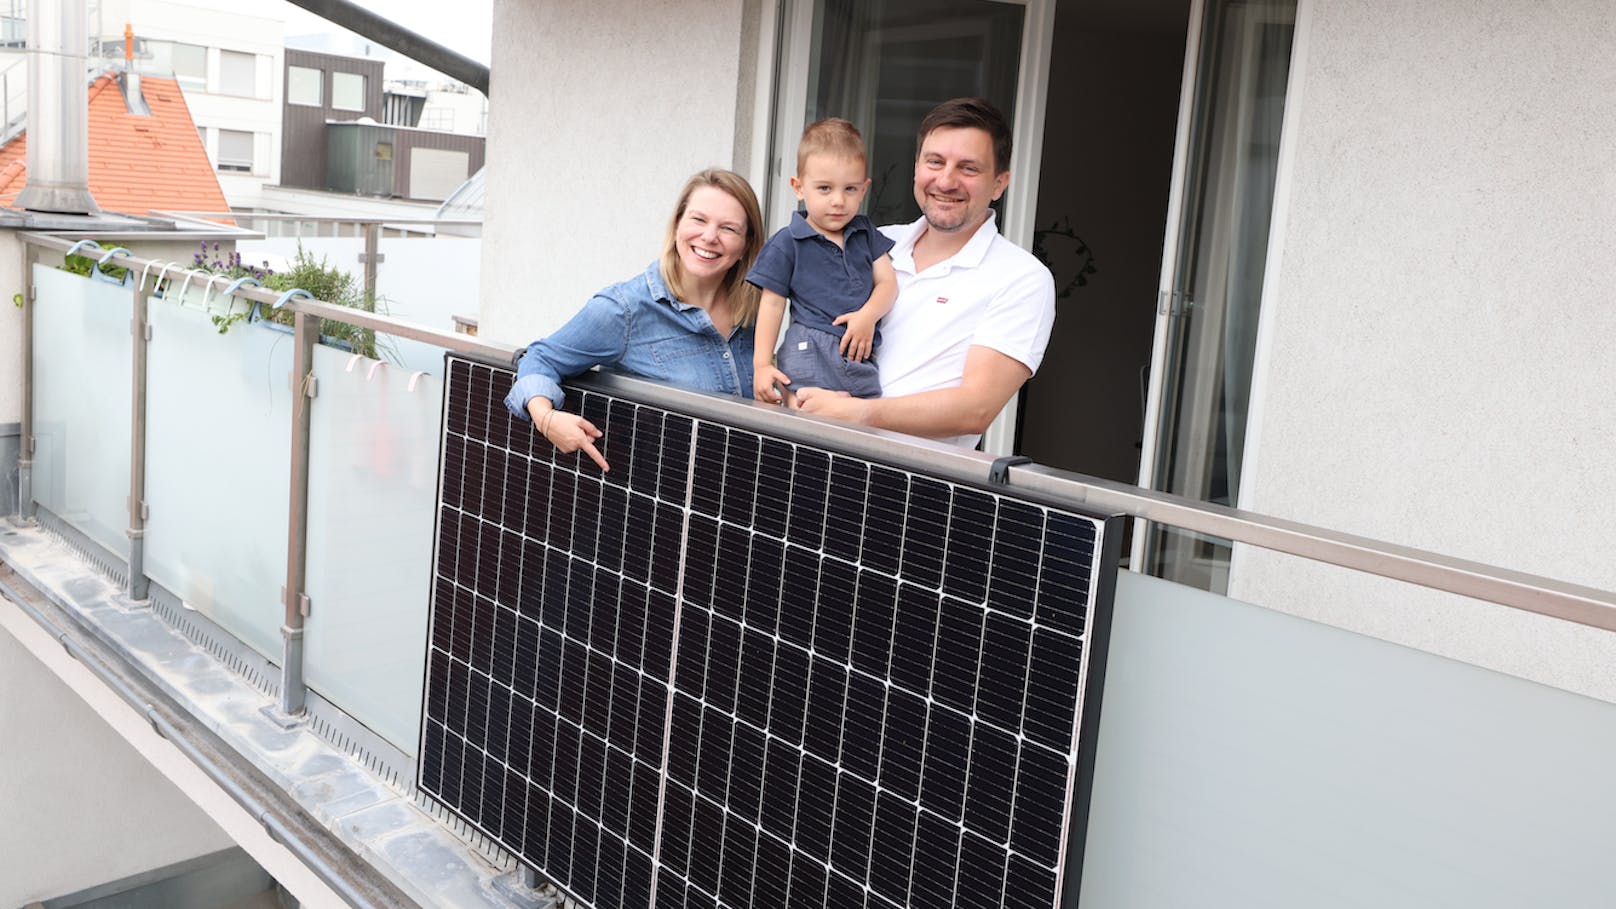 Sabine, Felix und Michael mit ihrem "Balkon-Kraftwerk". Rund 300 kW/h soll es erzeugen und so rund ein Viertel des Stromverbrauchs decken.